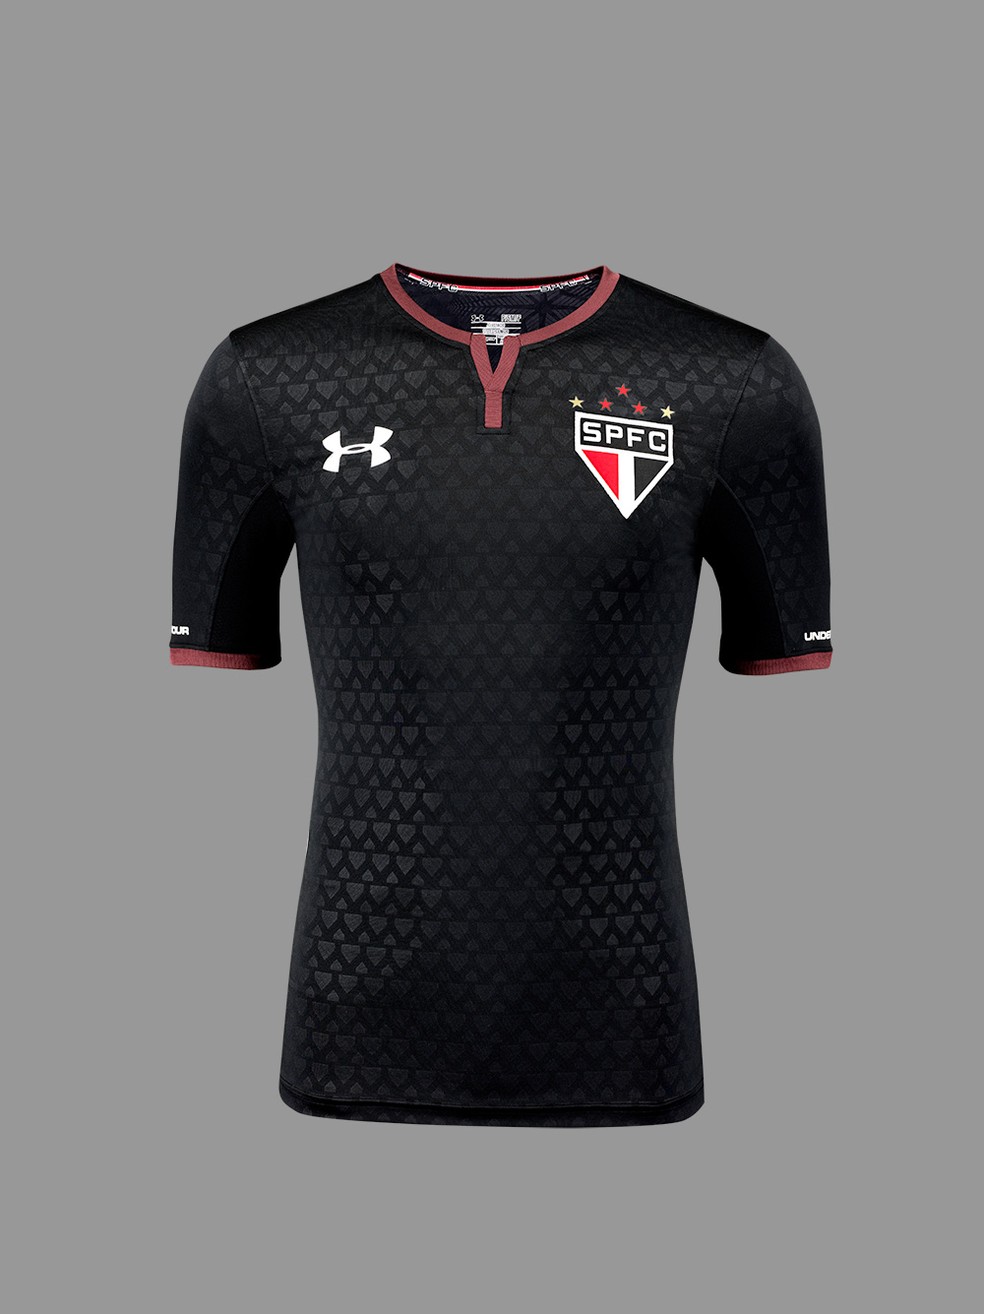 Terceira camisa do São Paulo: fornecedor pode de material esportivo pode mudar (Foto: Divulgação)